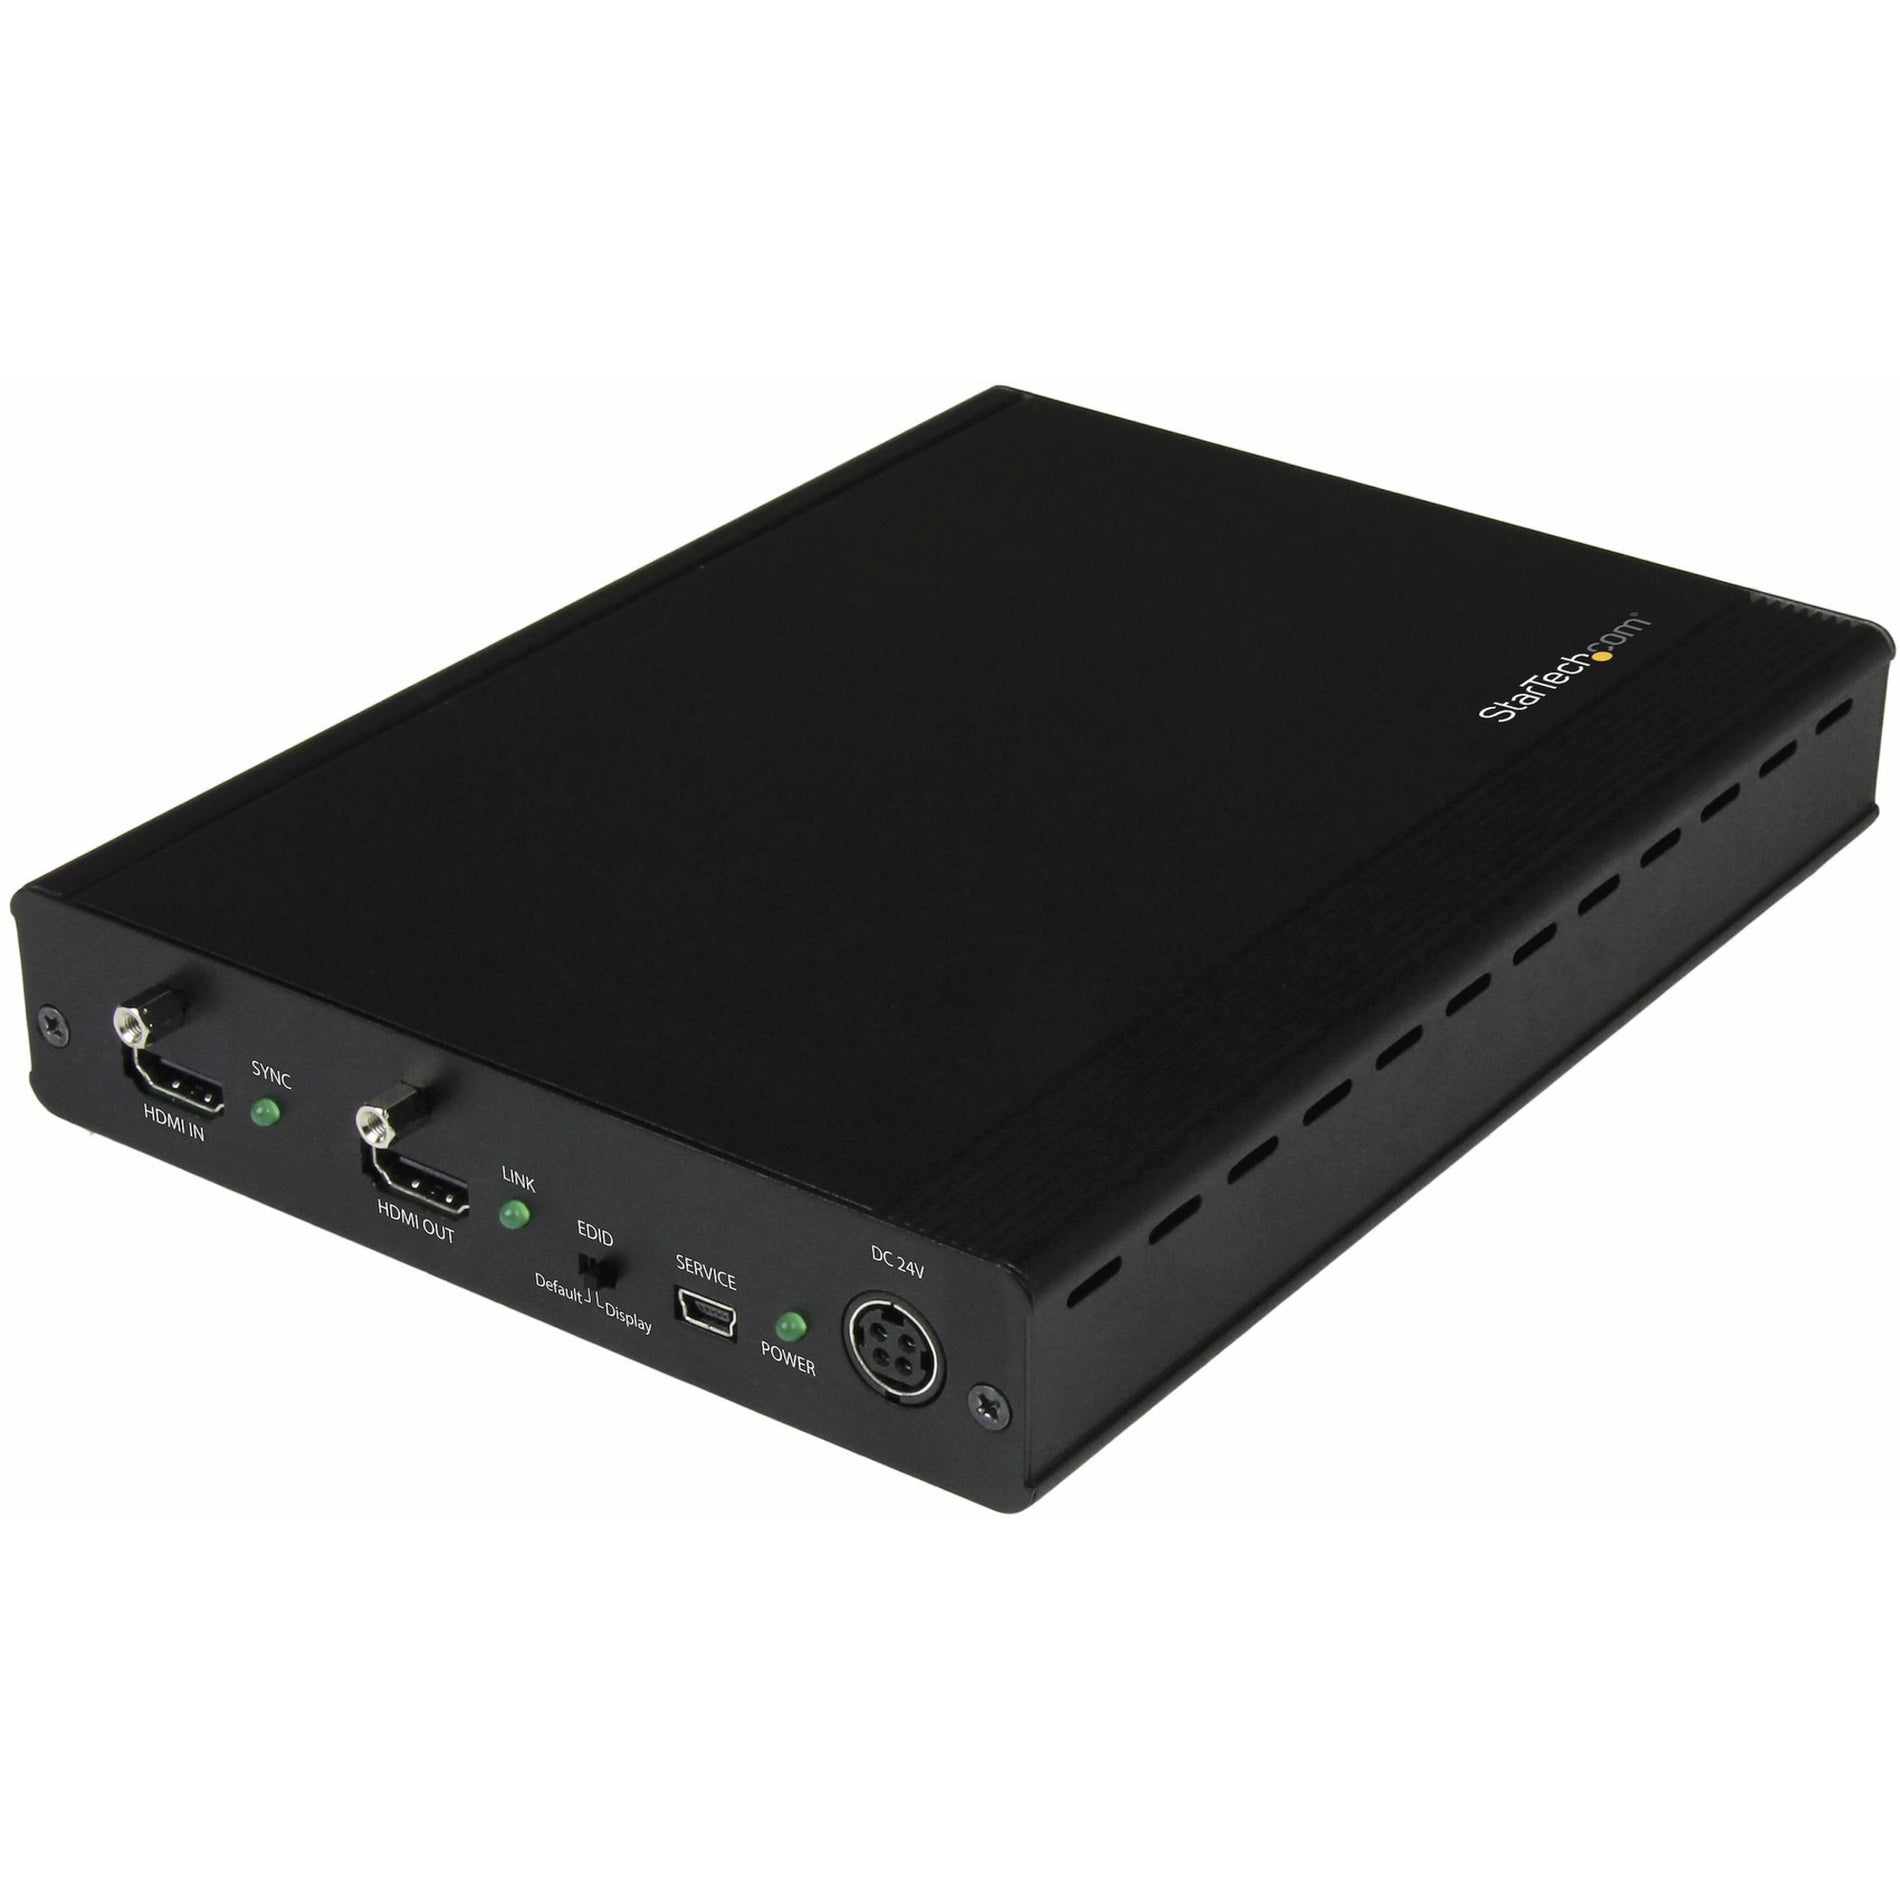 StarTech.com ST124HDBT Video Extender Transmitter/Receiver, 3 Port HDBaseT Extender Kit with 3 Receivers, Up to 4K